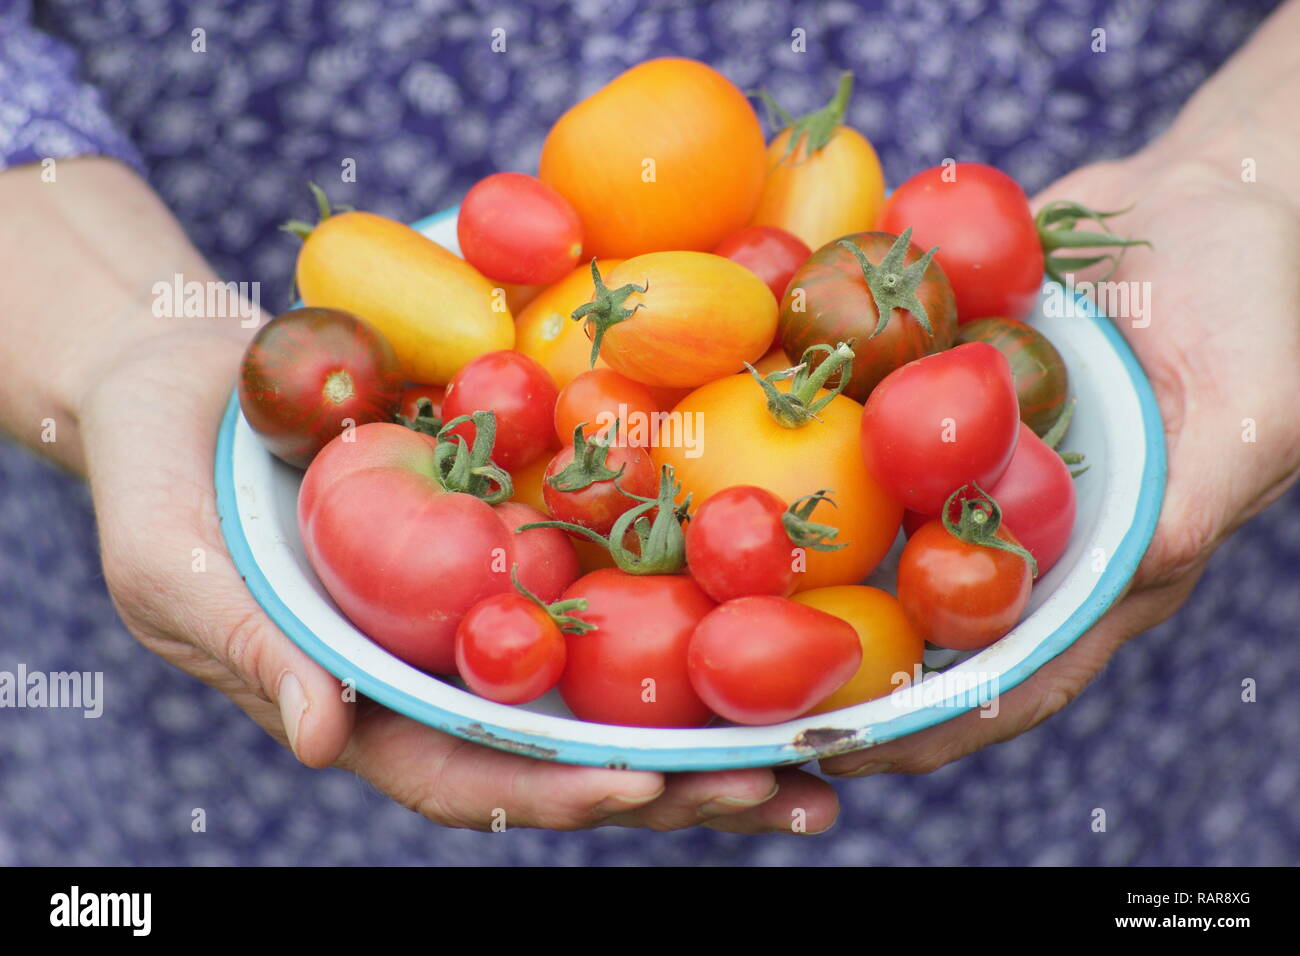 Solanum lycopersicum. Mujer presenta reliquia recién cogidas tomates en un plato. Foto incluyen Darby,rayas rojo cereza, Pera Chadwick & Tibet apple Foto de stock